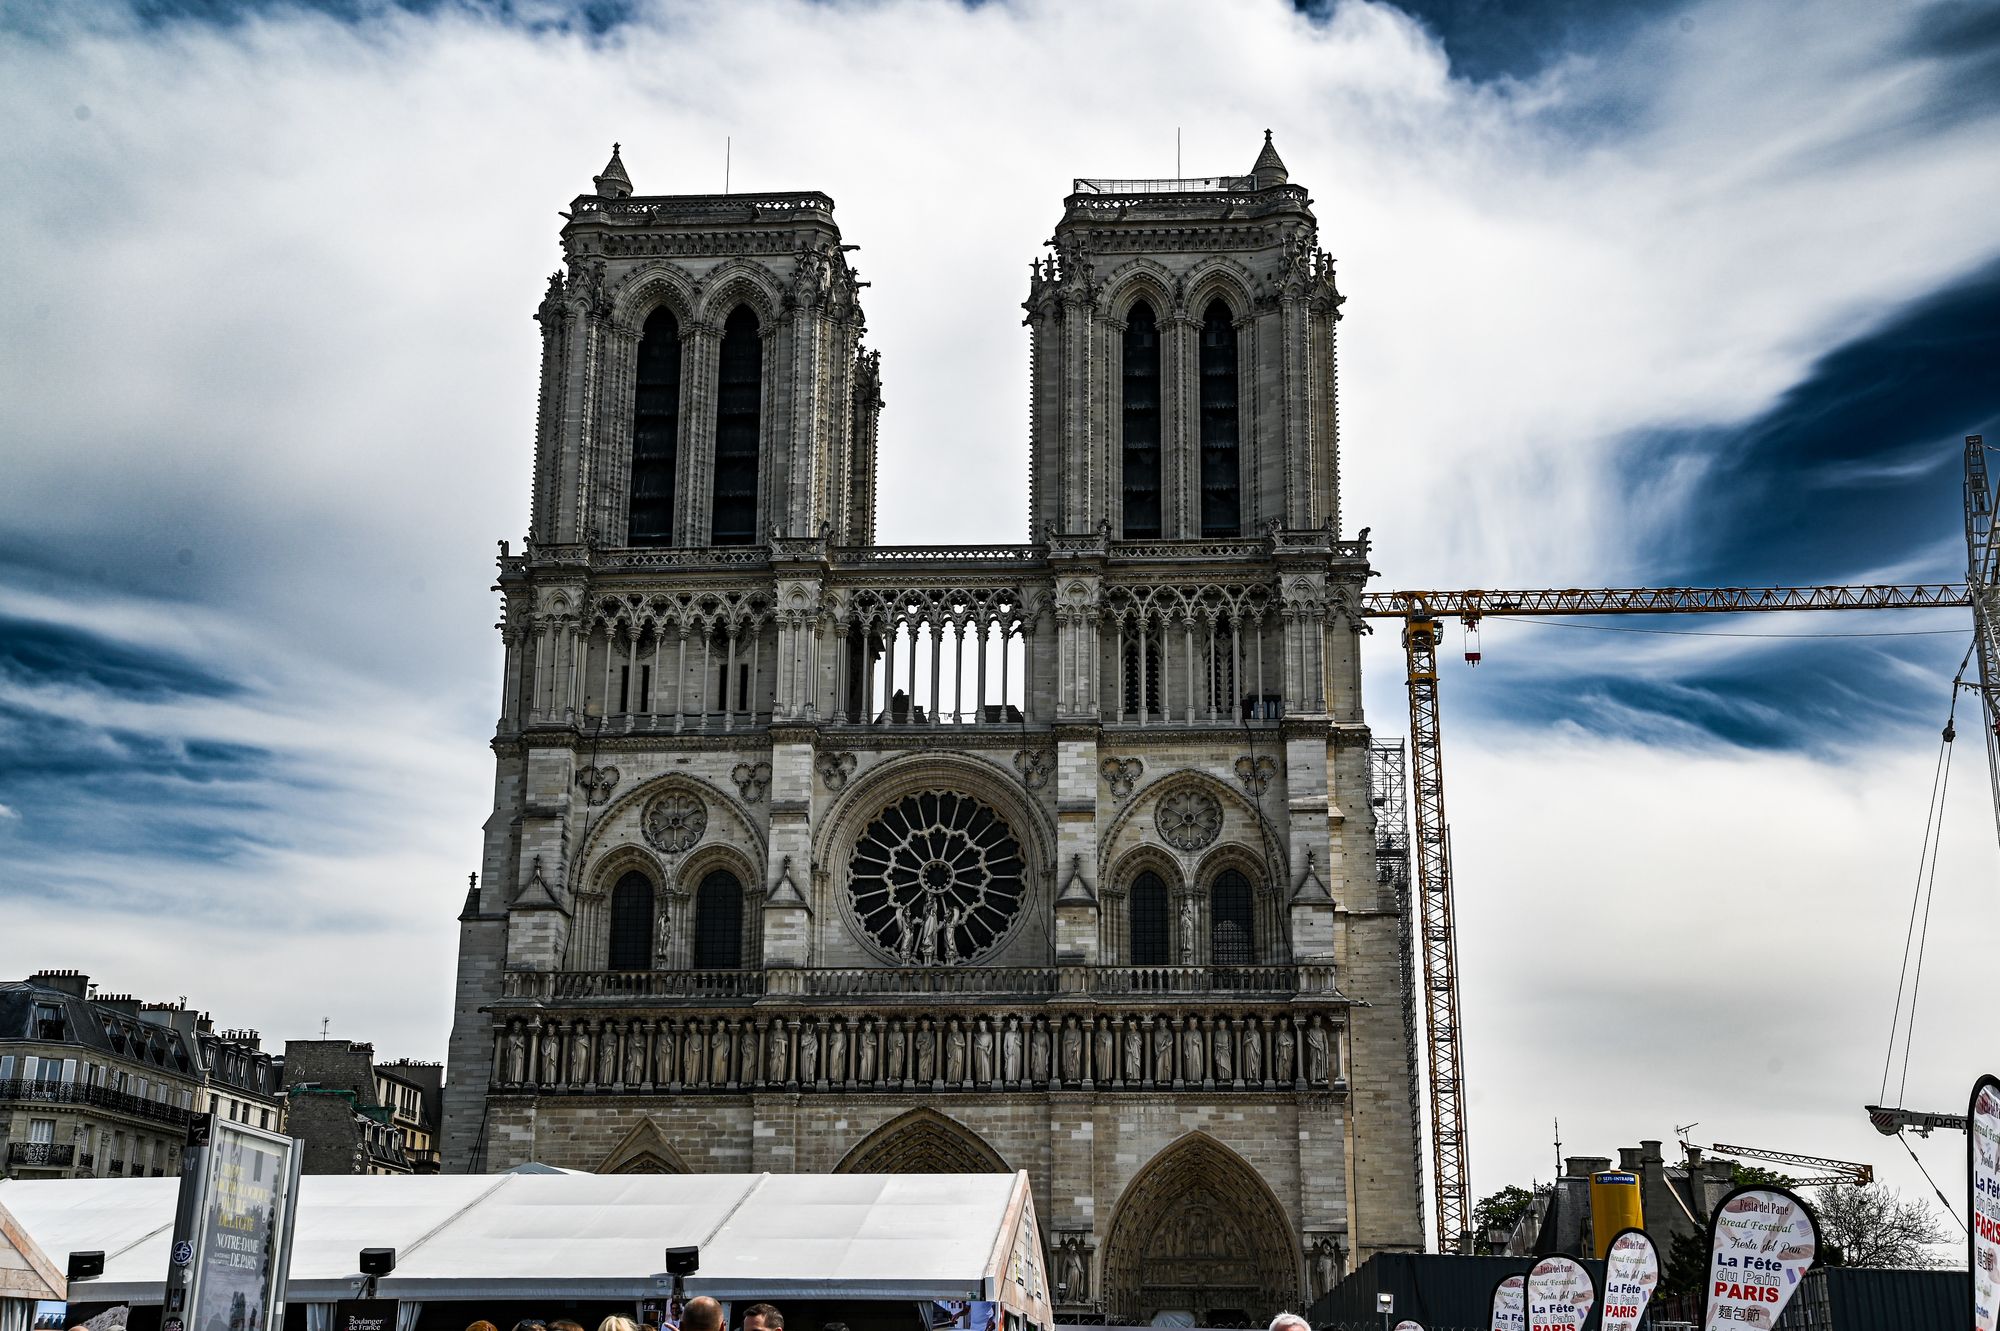 Exposition Paris 2023/2024-Notre Dame de Paris